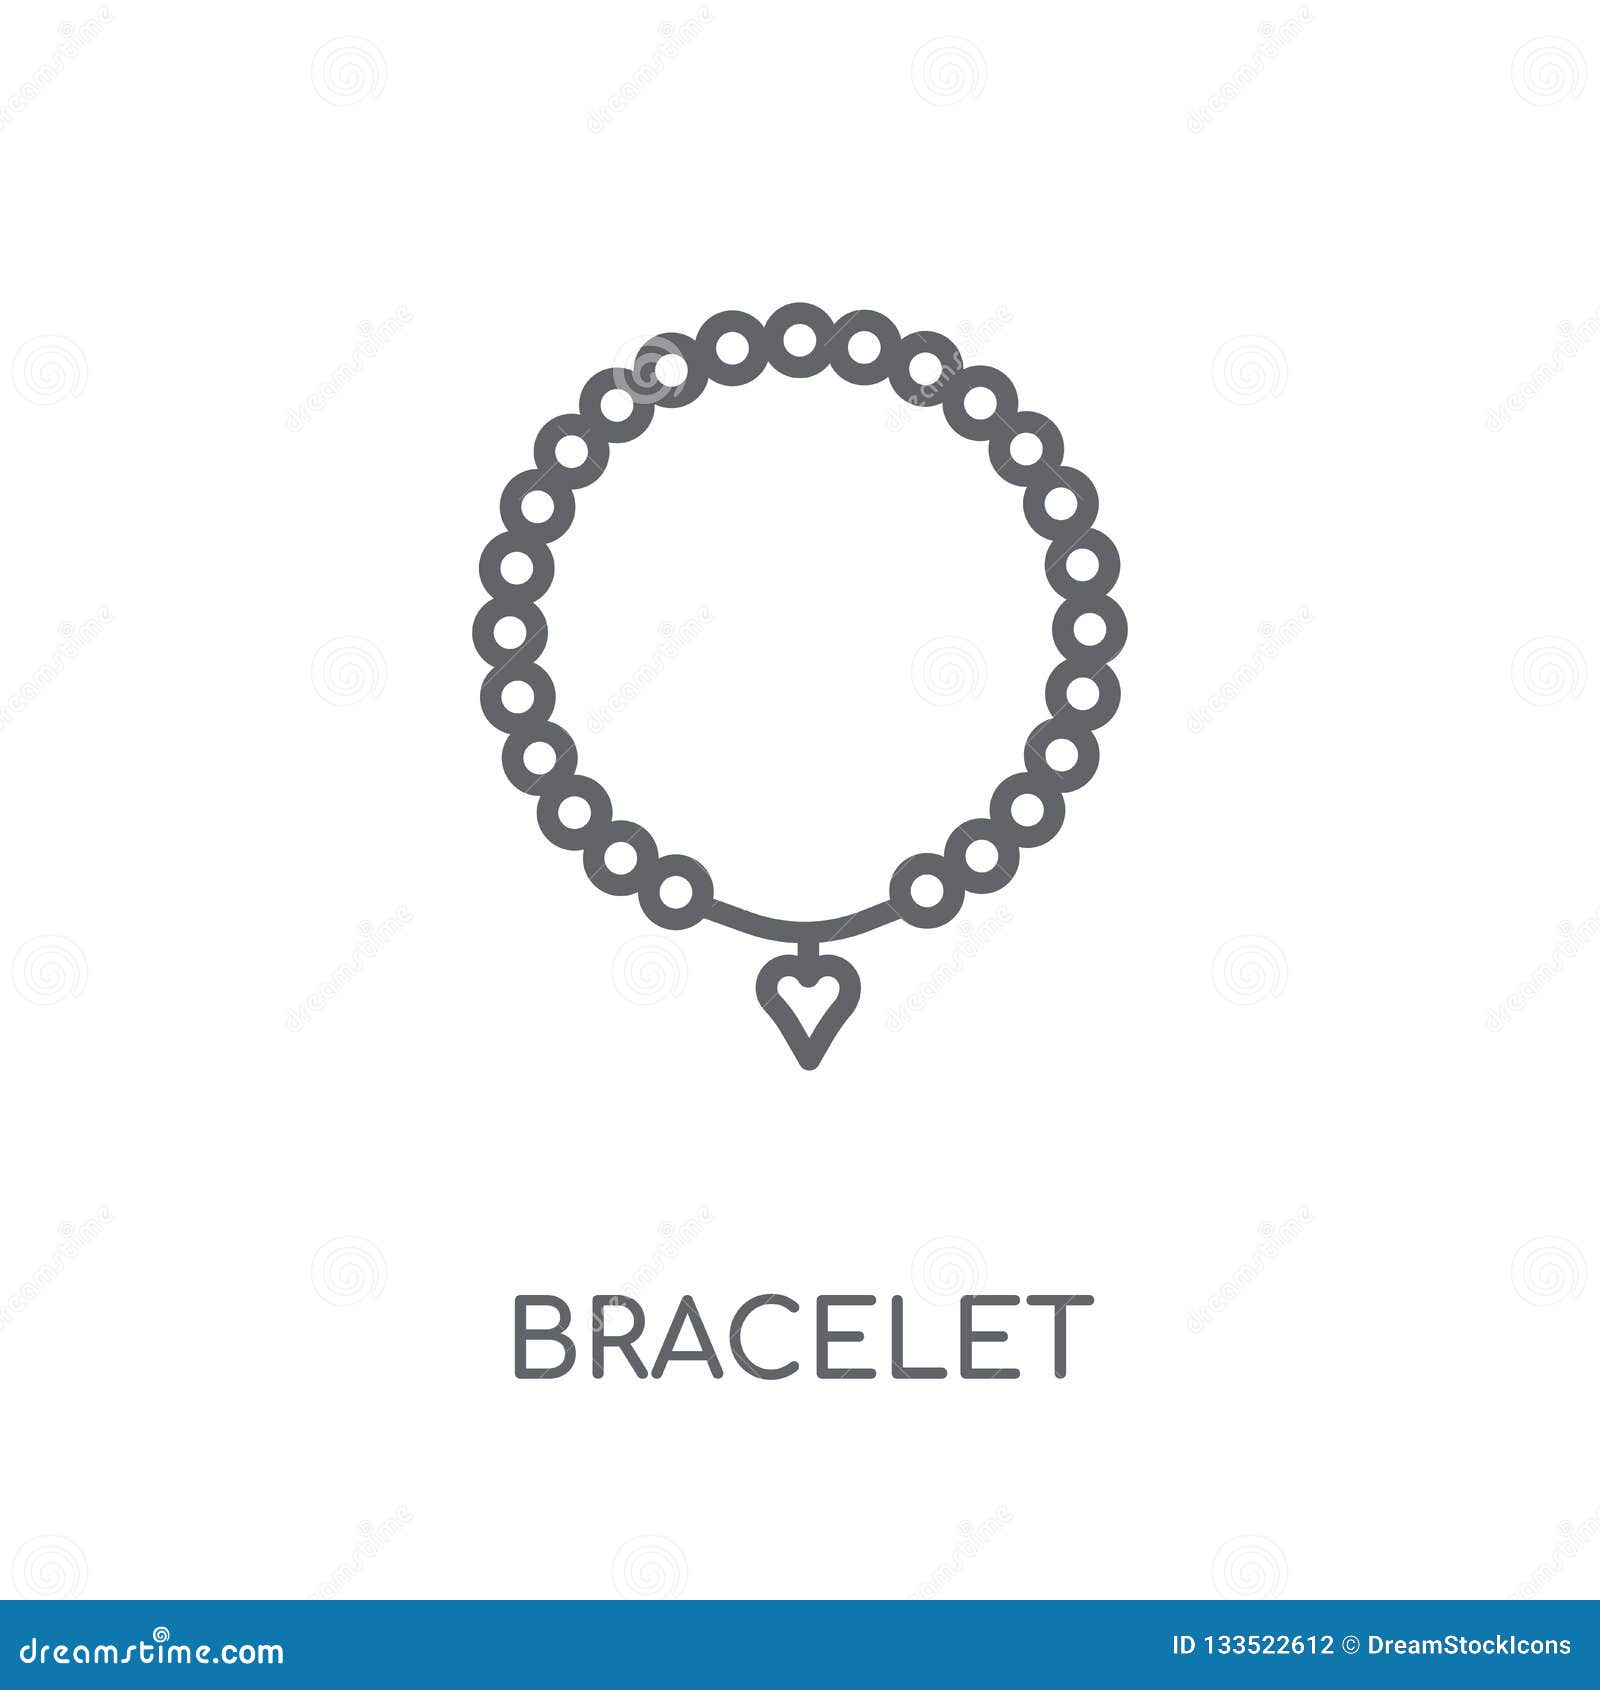 Details 70+ bracelet logo latest - 3tdesign.edu.vn